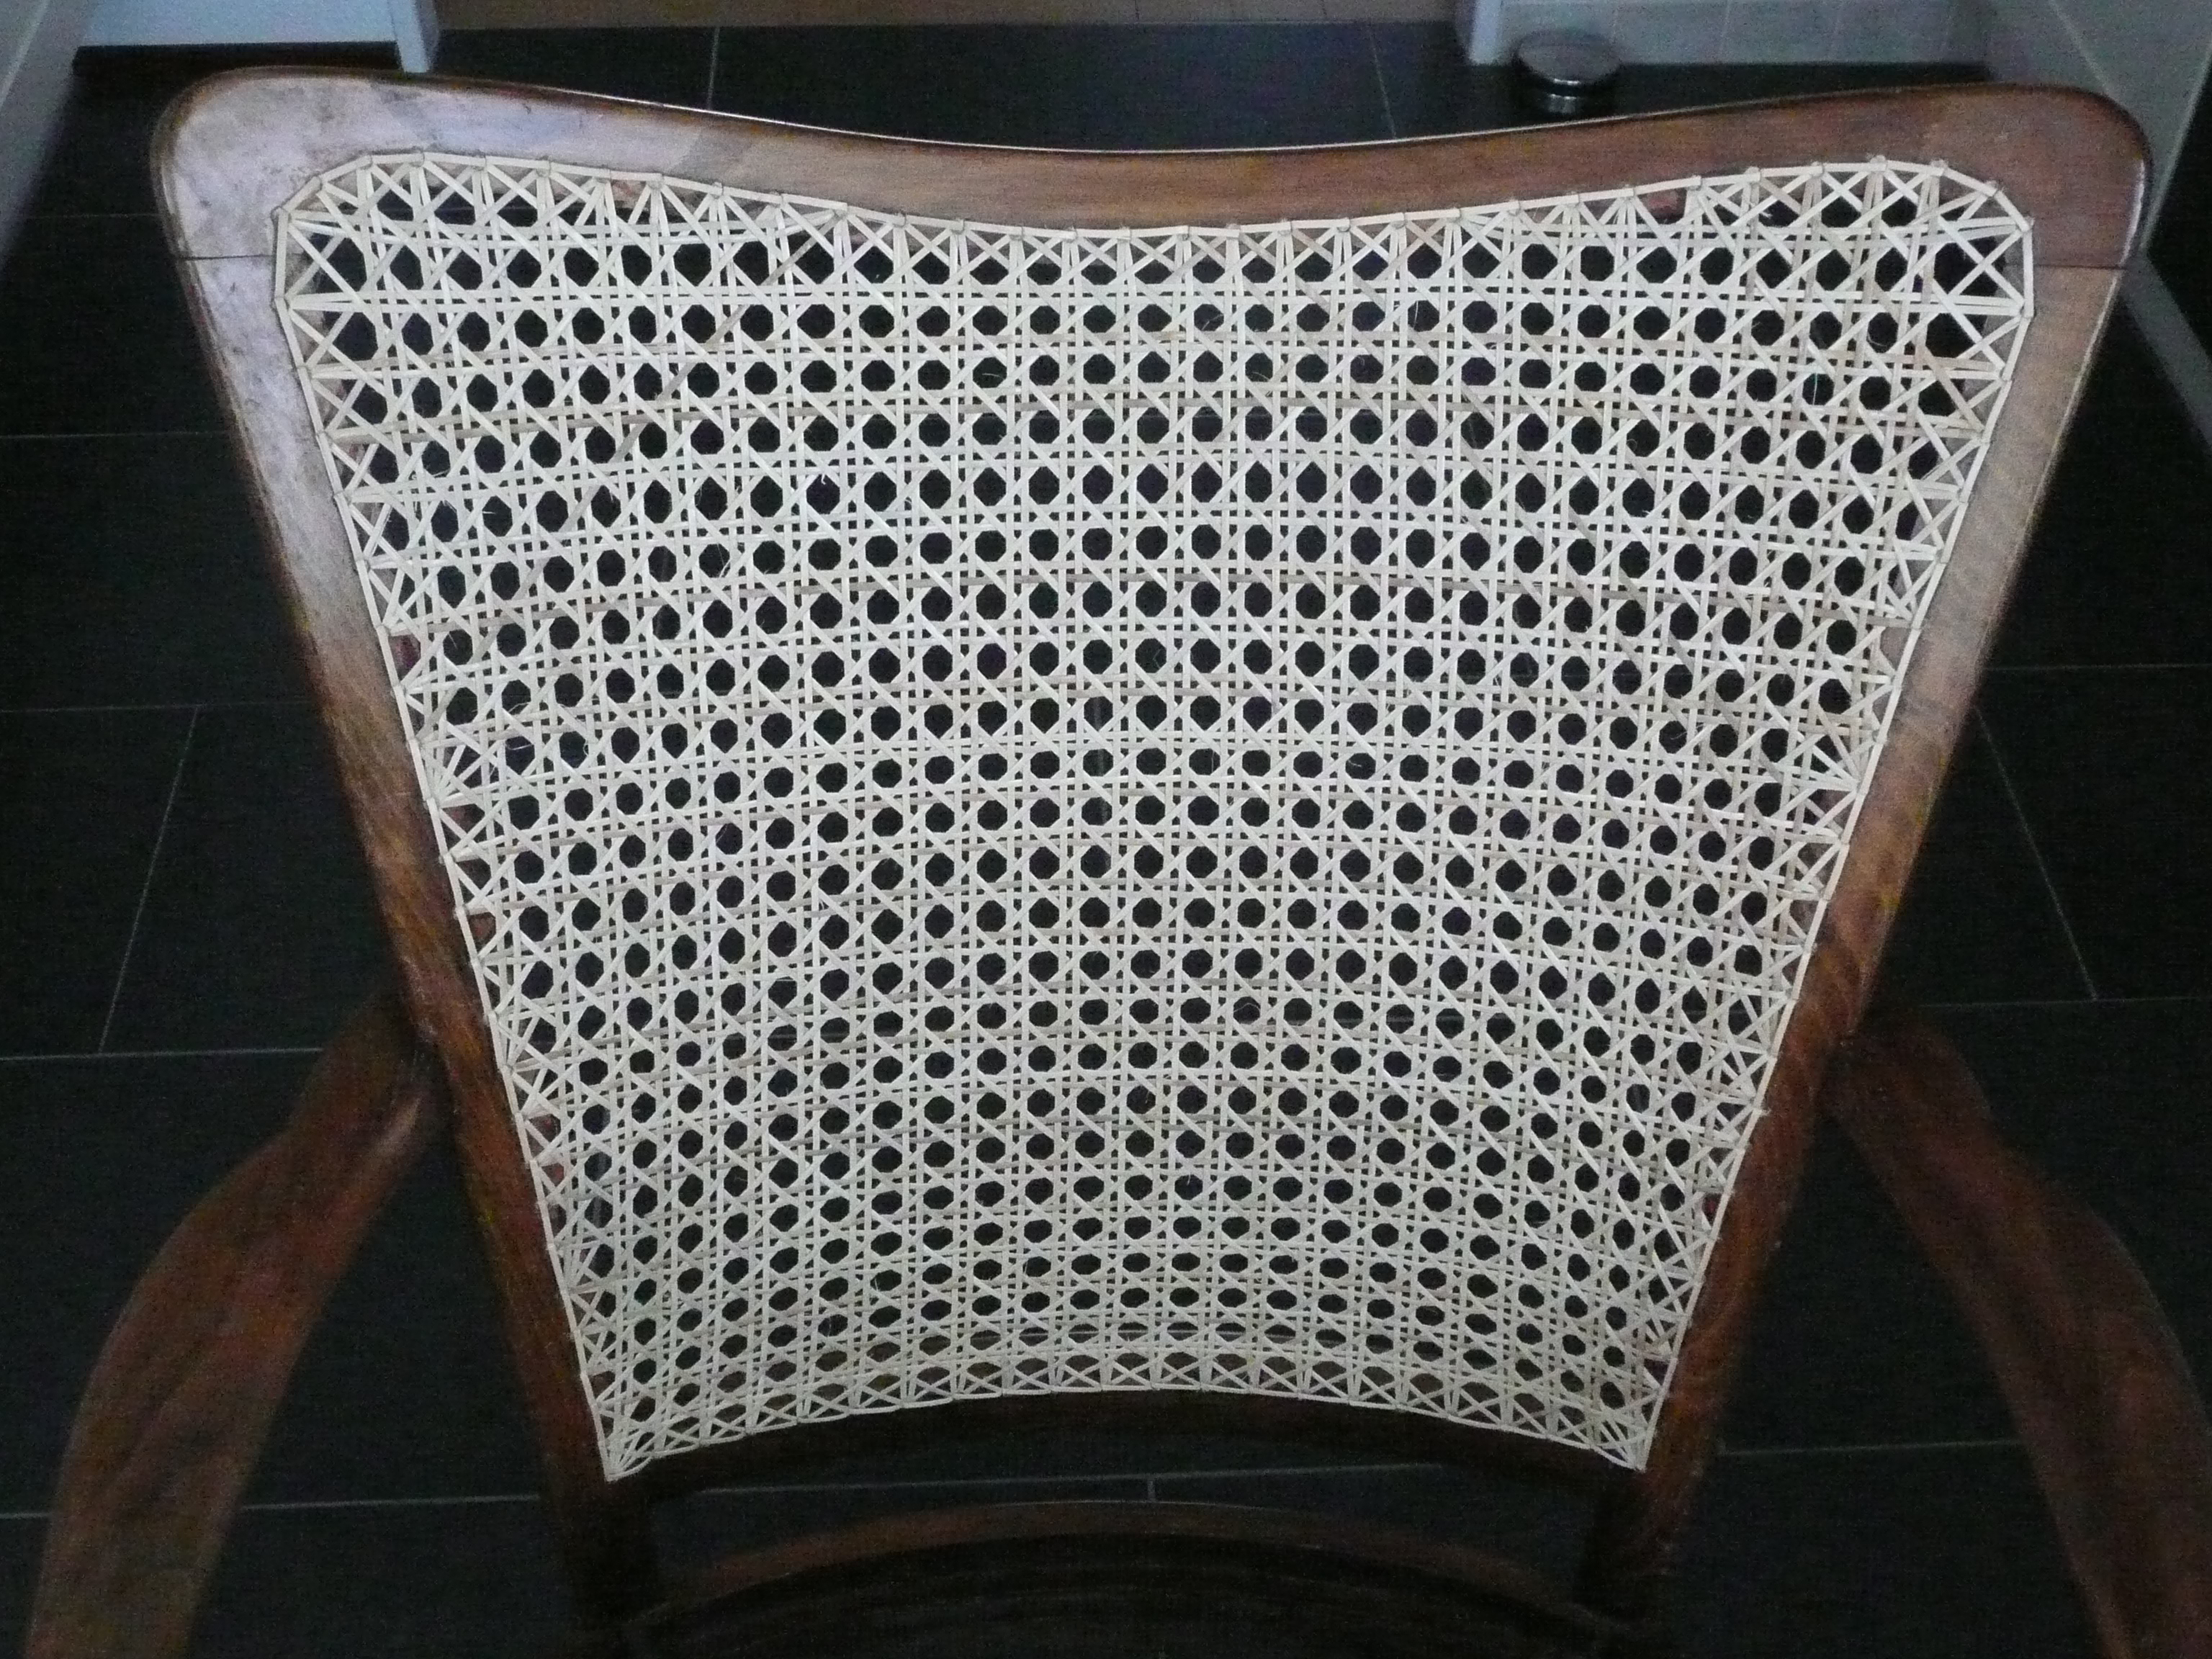 fauteuil rugleuning: gemat in zesslag patroon